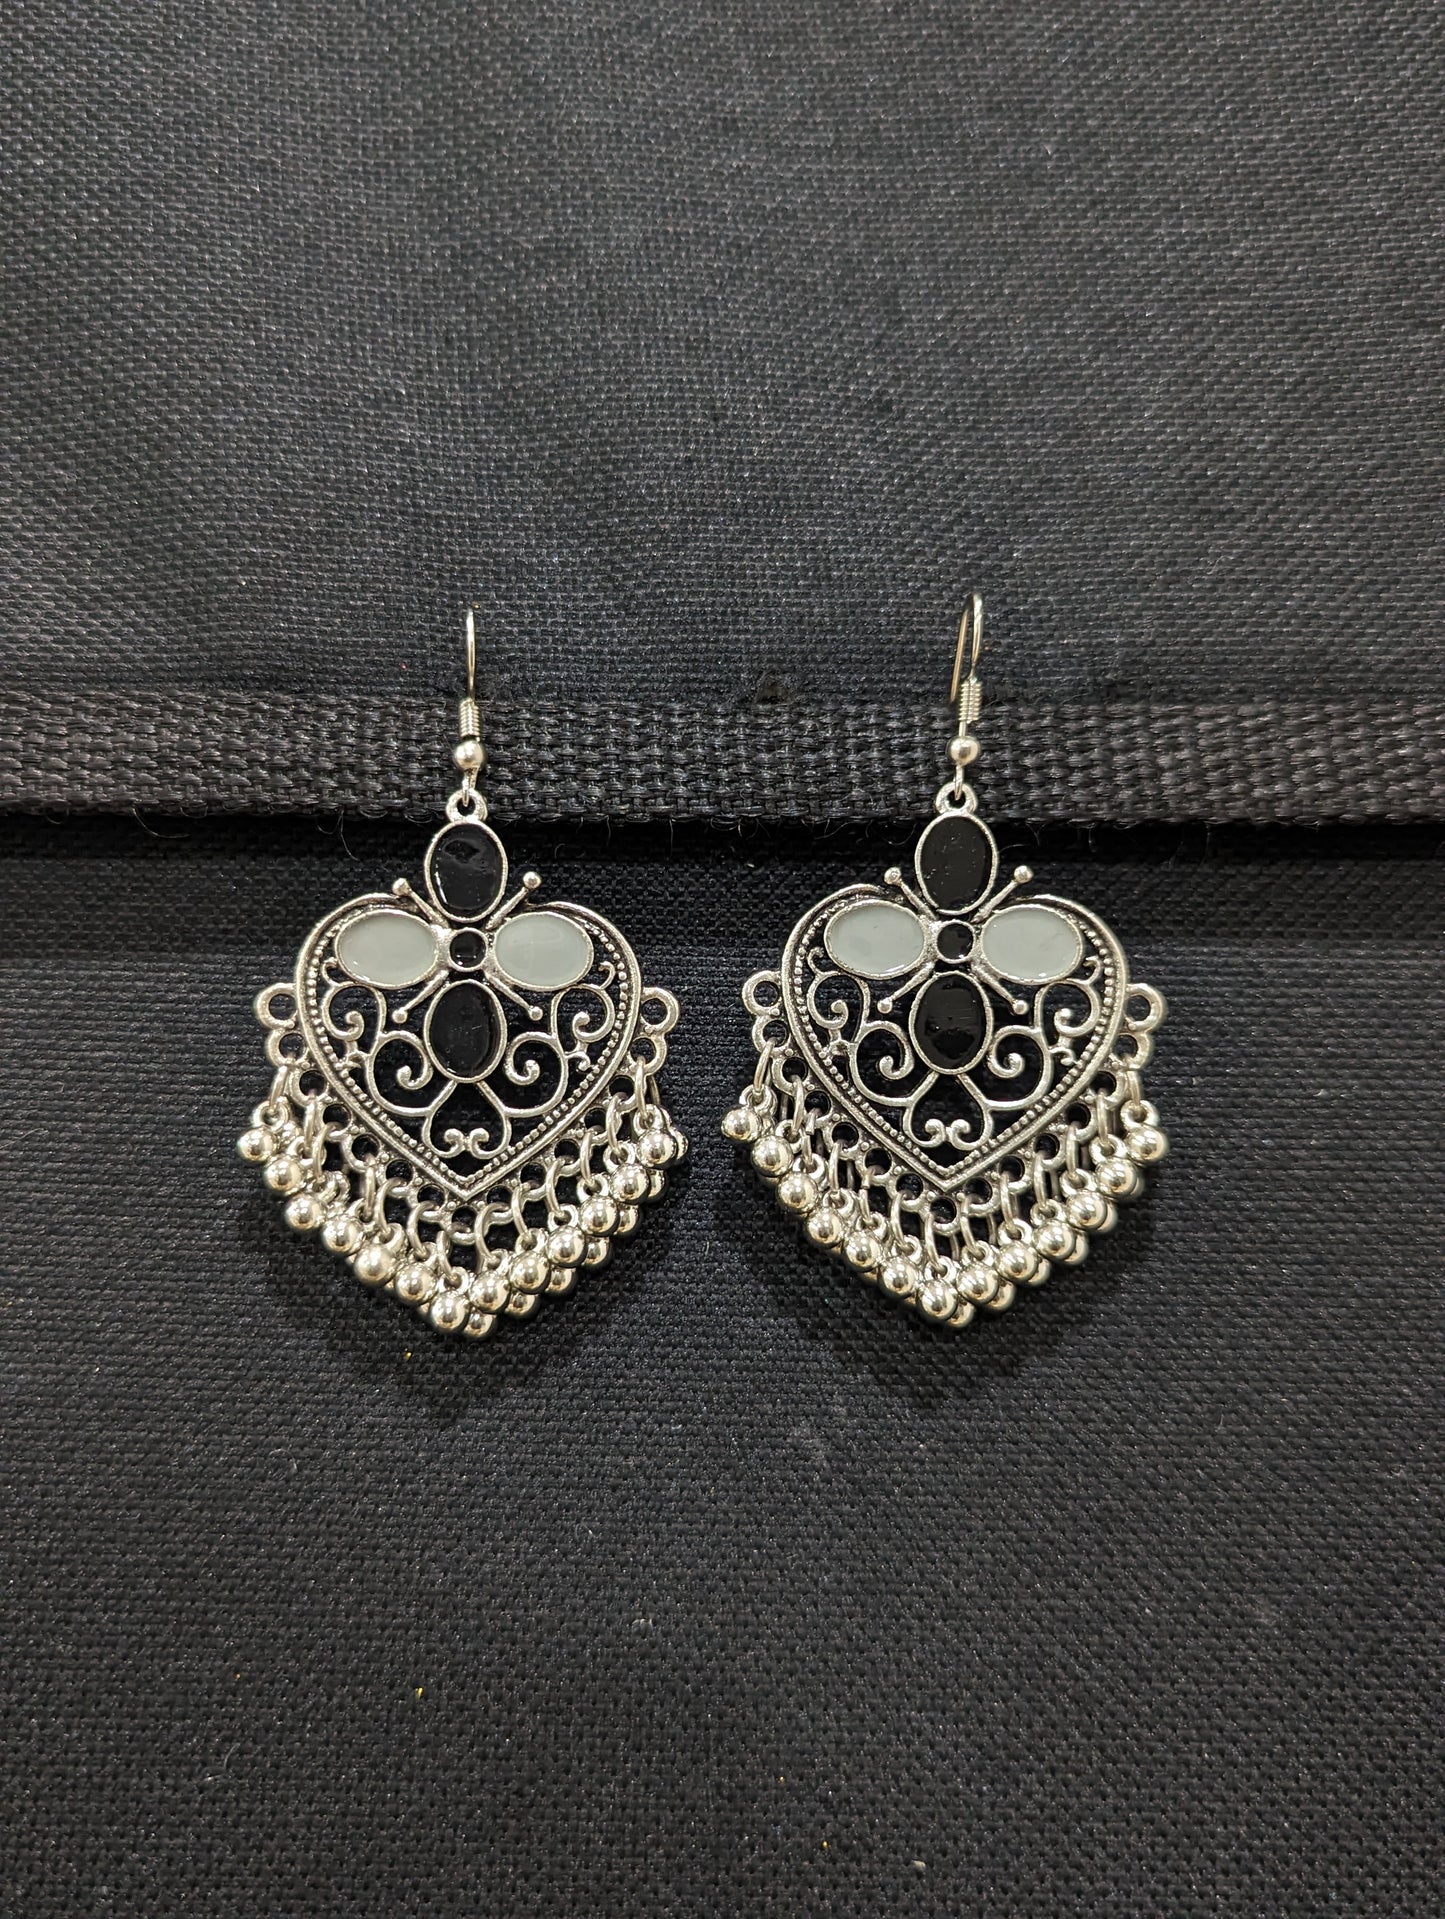 Antique silver enamel hook drop Earrings - 5 designs - Simpliful